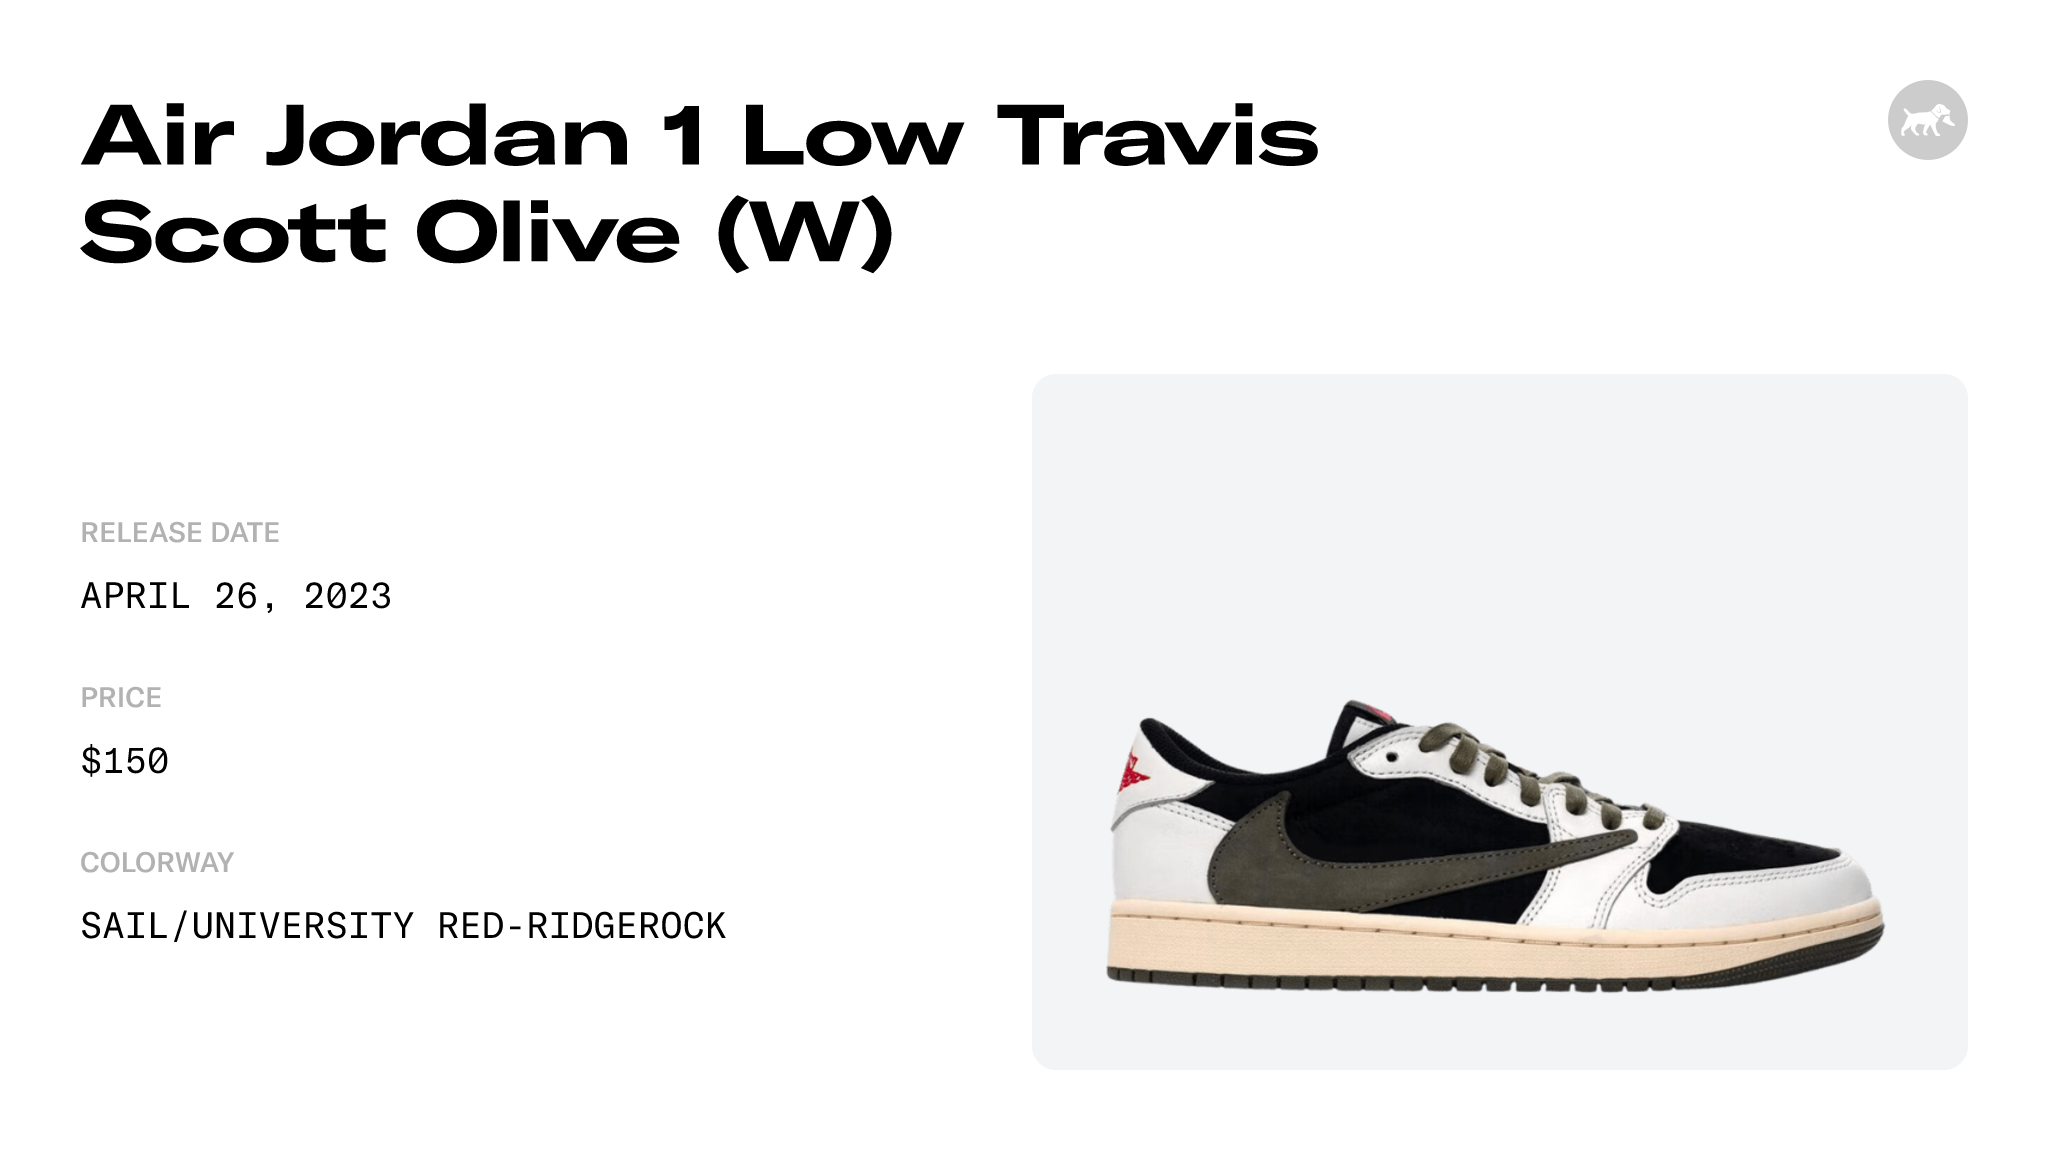 Medium Olive' Travis Scott x Air Jordan 1 Low Drops Tomorrow